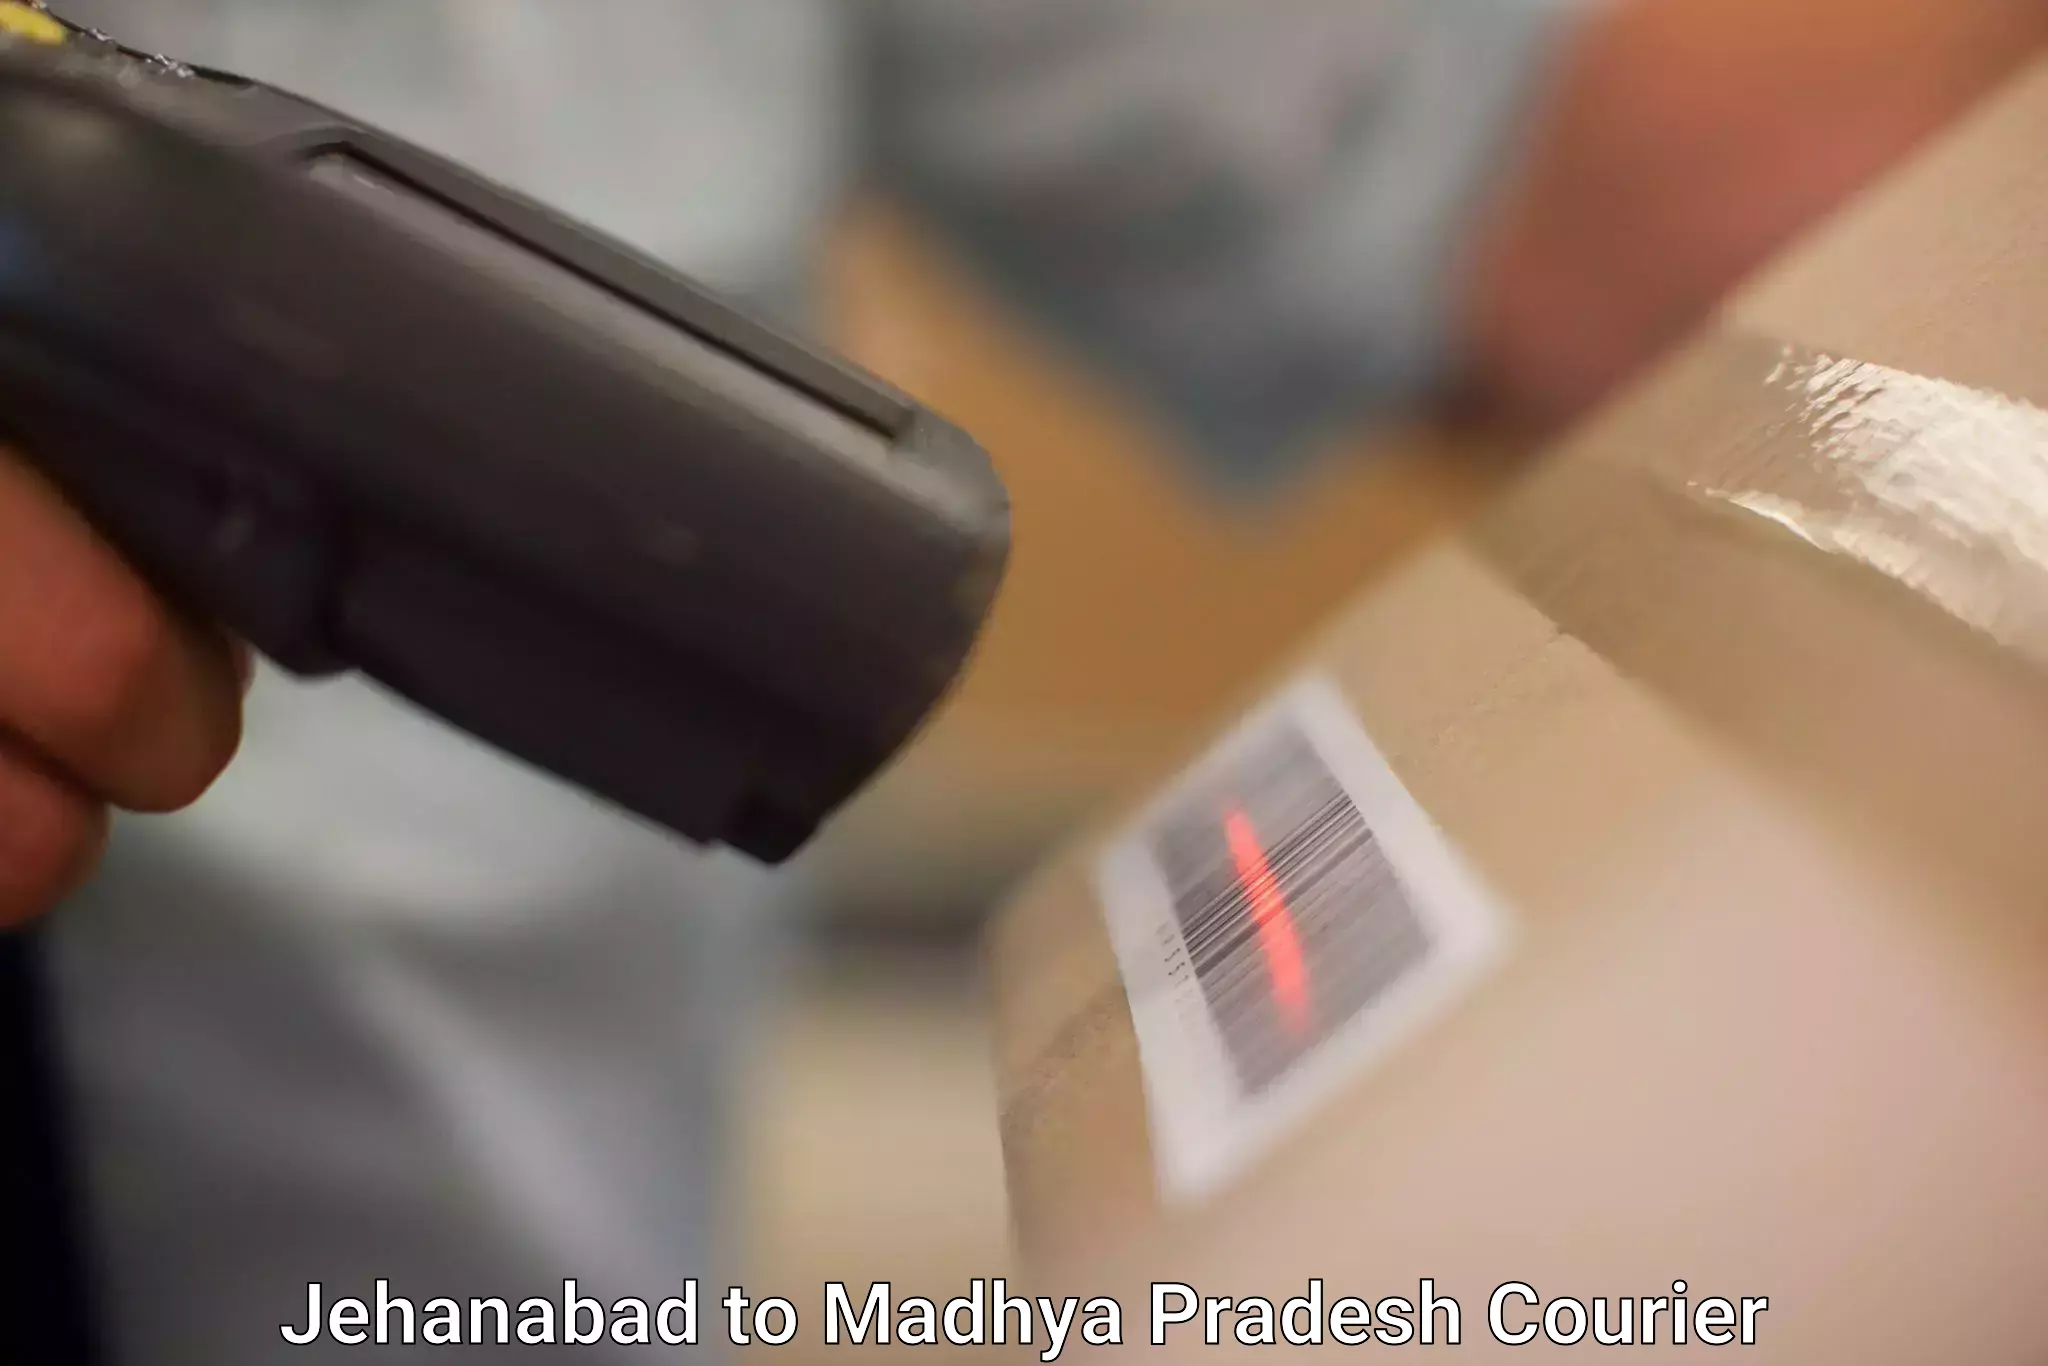 High-capacity parcel service Jehanabad to Manasa